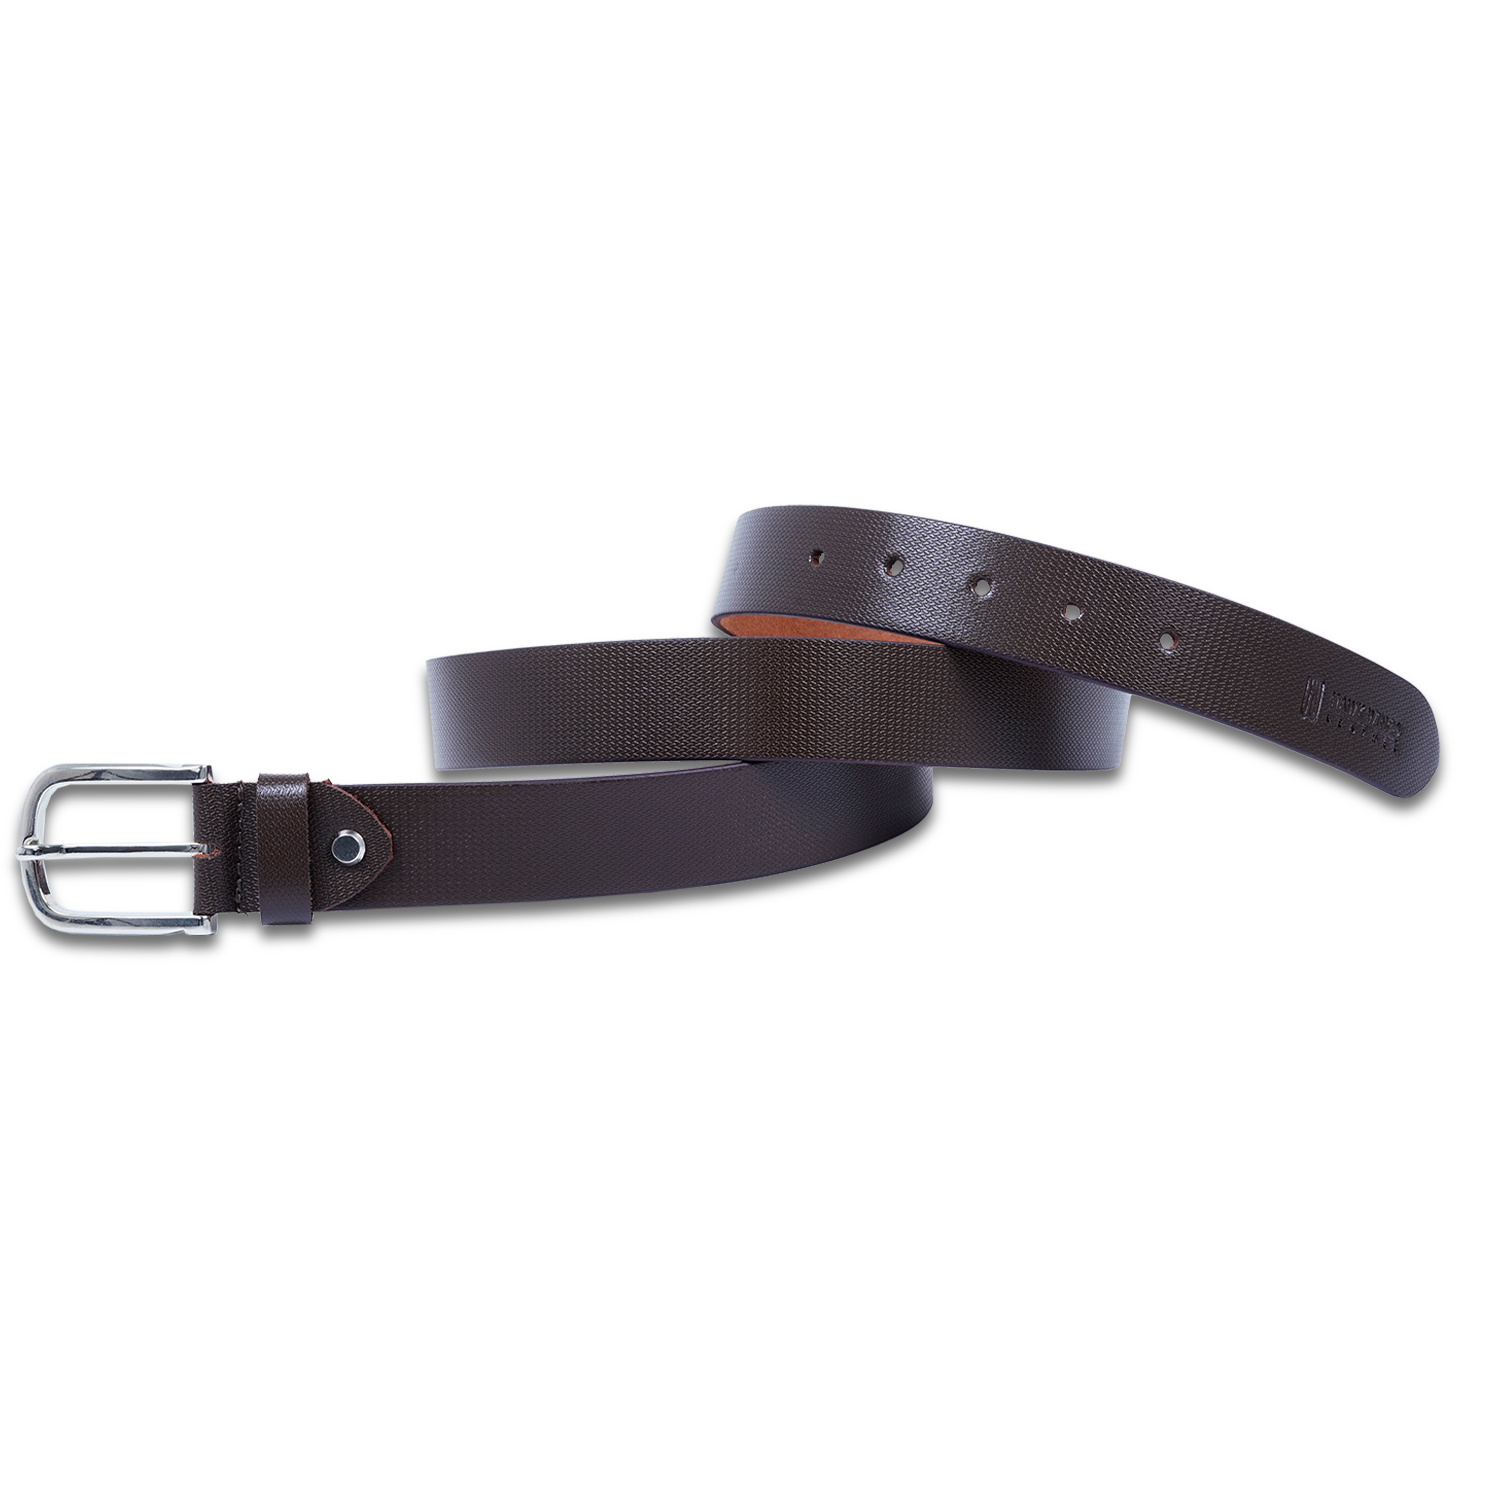  Genuine Leather Belt for Men |Brown| Formal Belt-asset-274